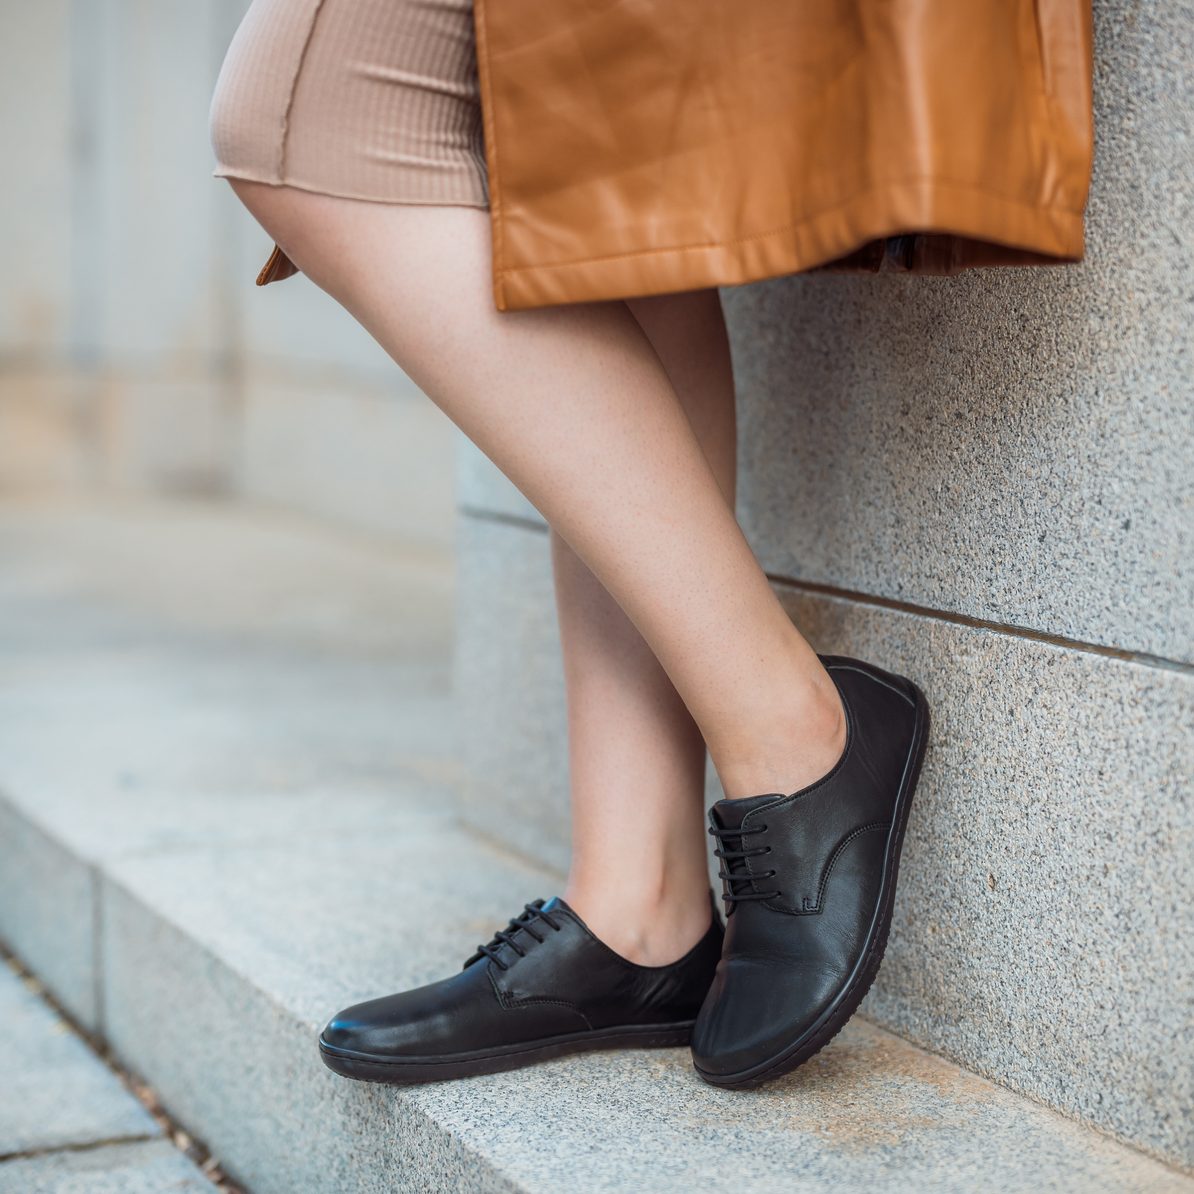 Jak si správně změřit nohu a proč potřebují barefoot boty nadměrek